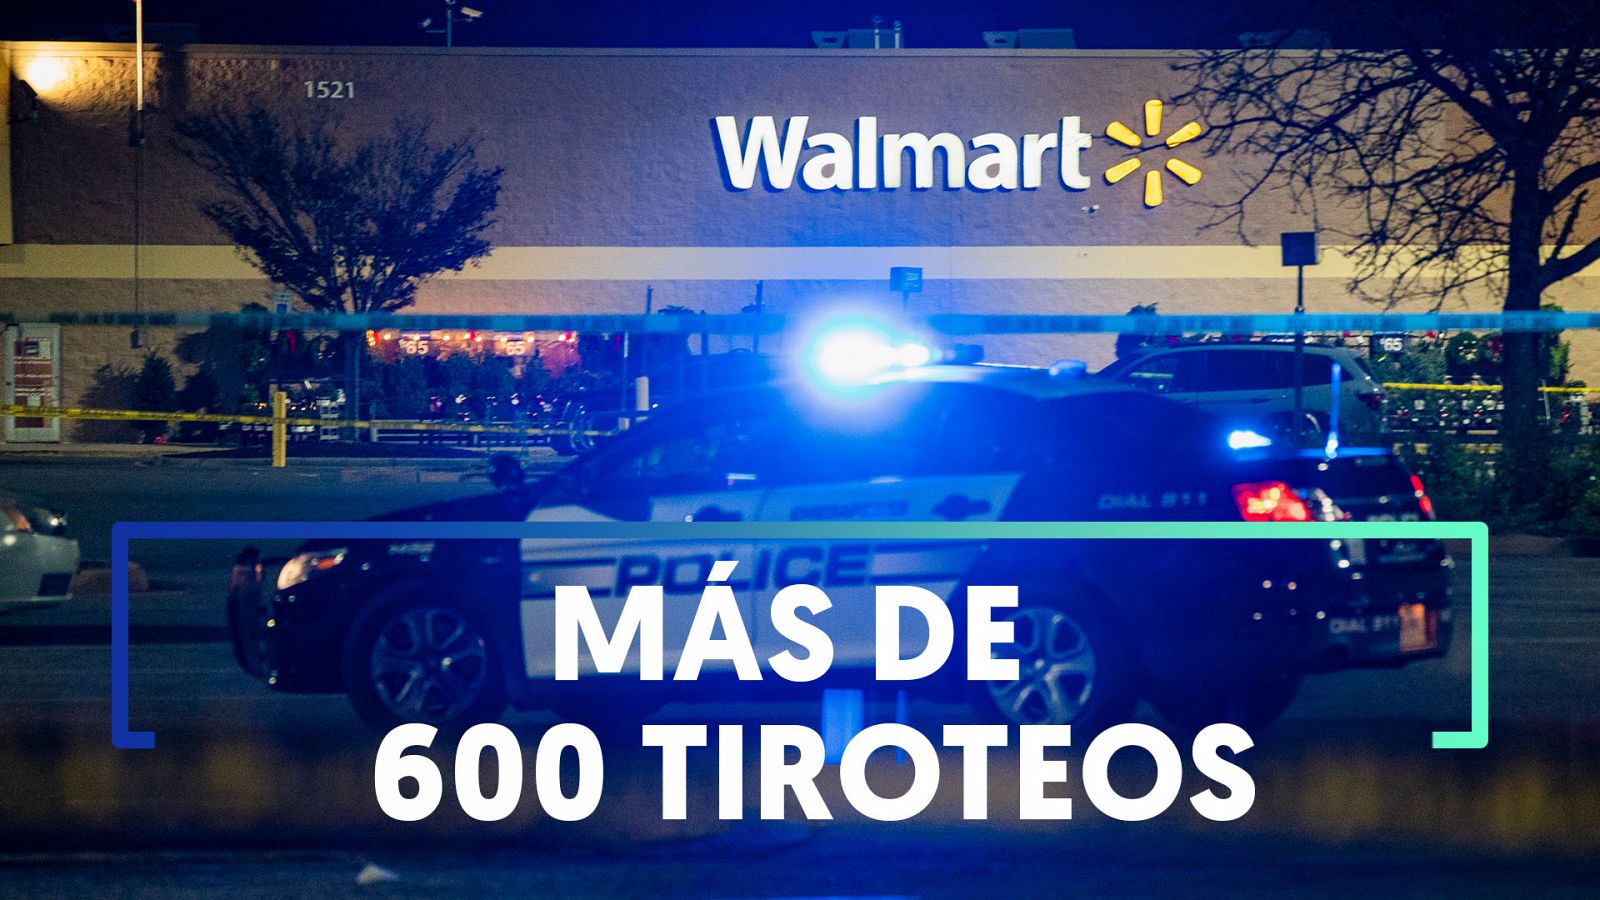 Un nuevo tiroteo masivo en un supermercado Walmart de Virginia deja víctimas